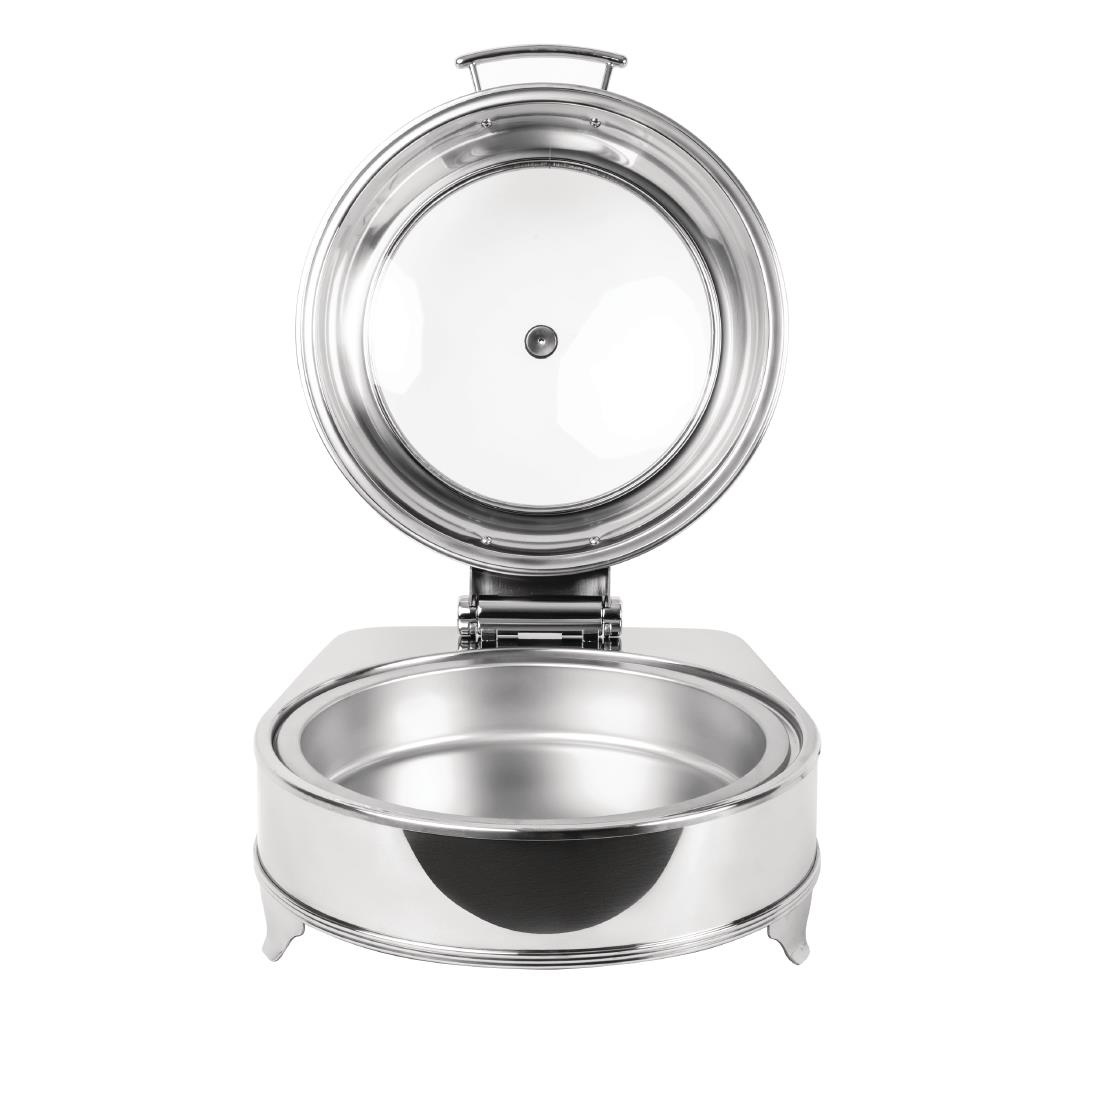 Ronde Chafing Dish Elektrisch | Glazen Deksel | 6 Liter | 425x490x(H)240mm